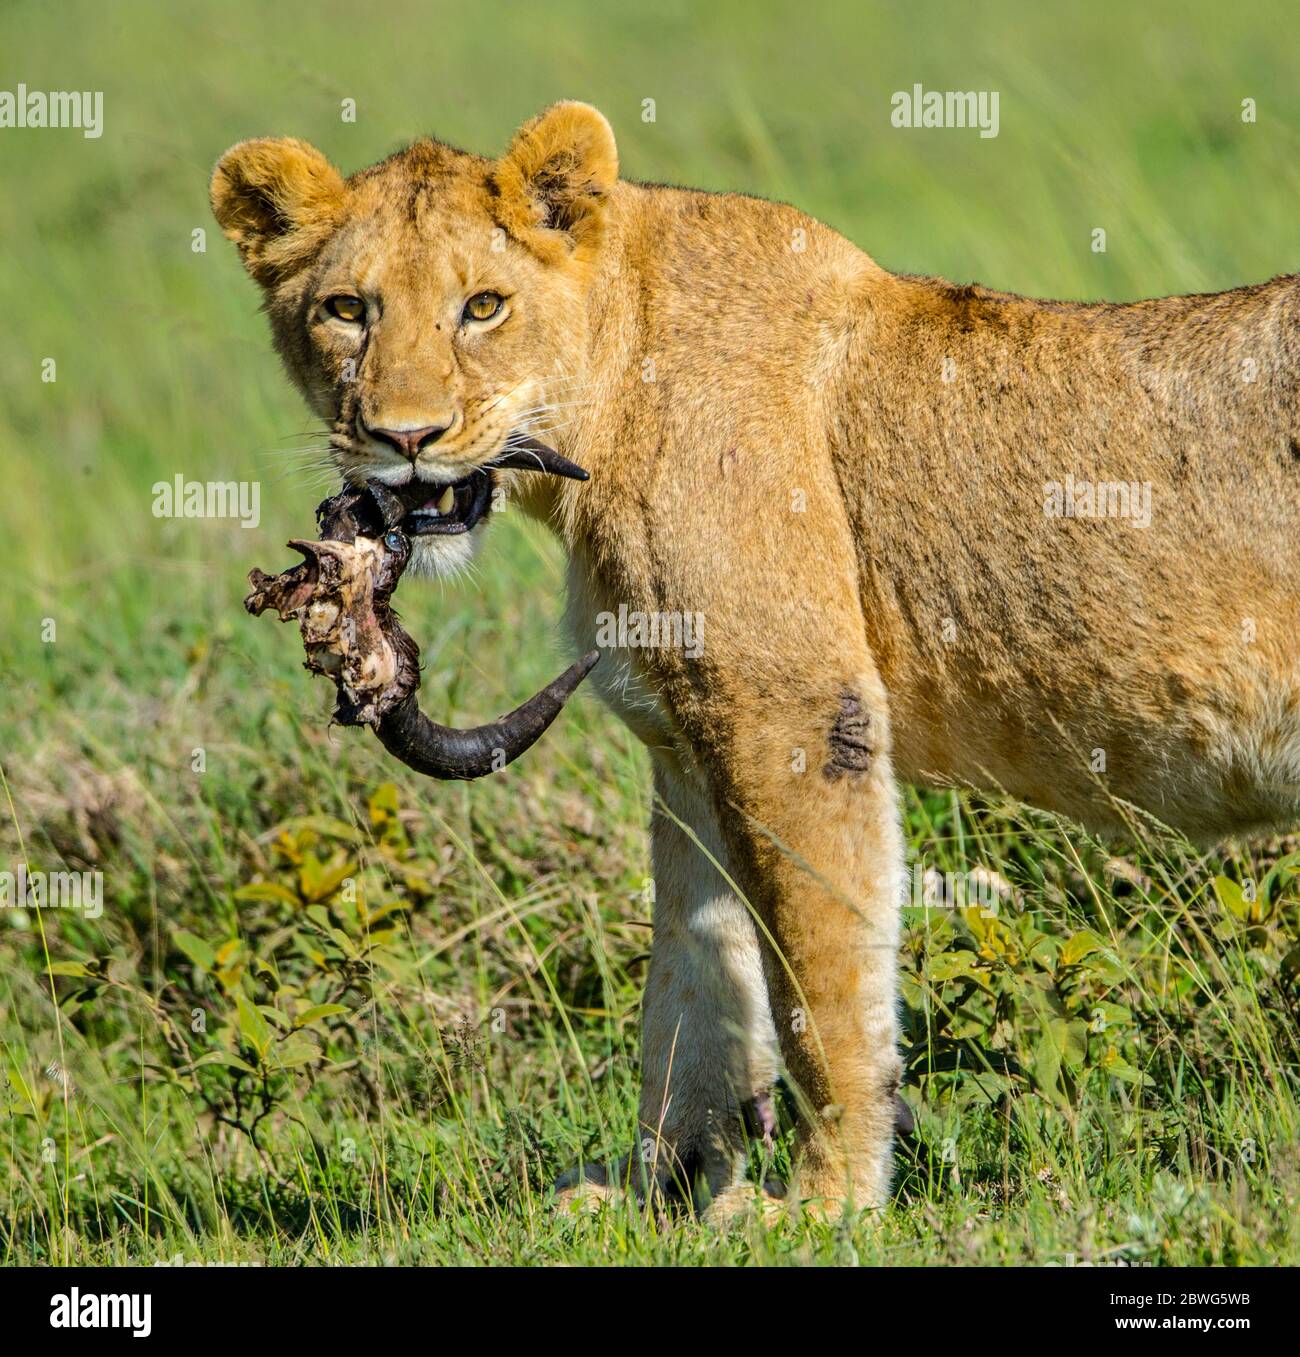 Lioness (Panthera leo) regardant la caméra avec des cornes d'animaux morts dans la bouche, zone de conservation de Ngorongoro, Tanzanie, Afrique Banque D'Images